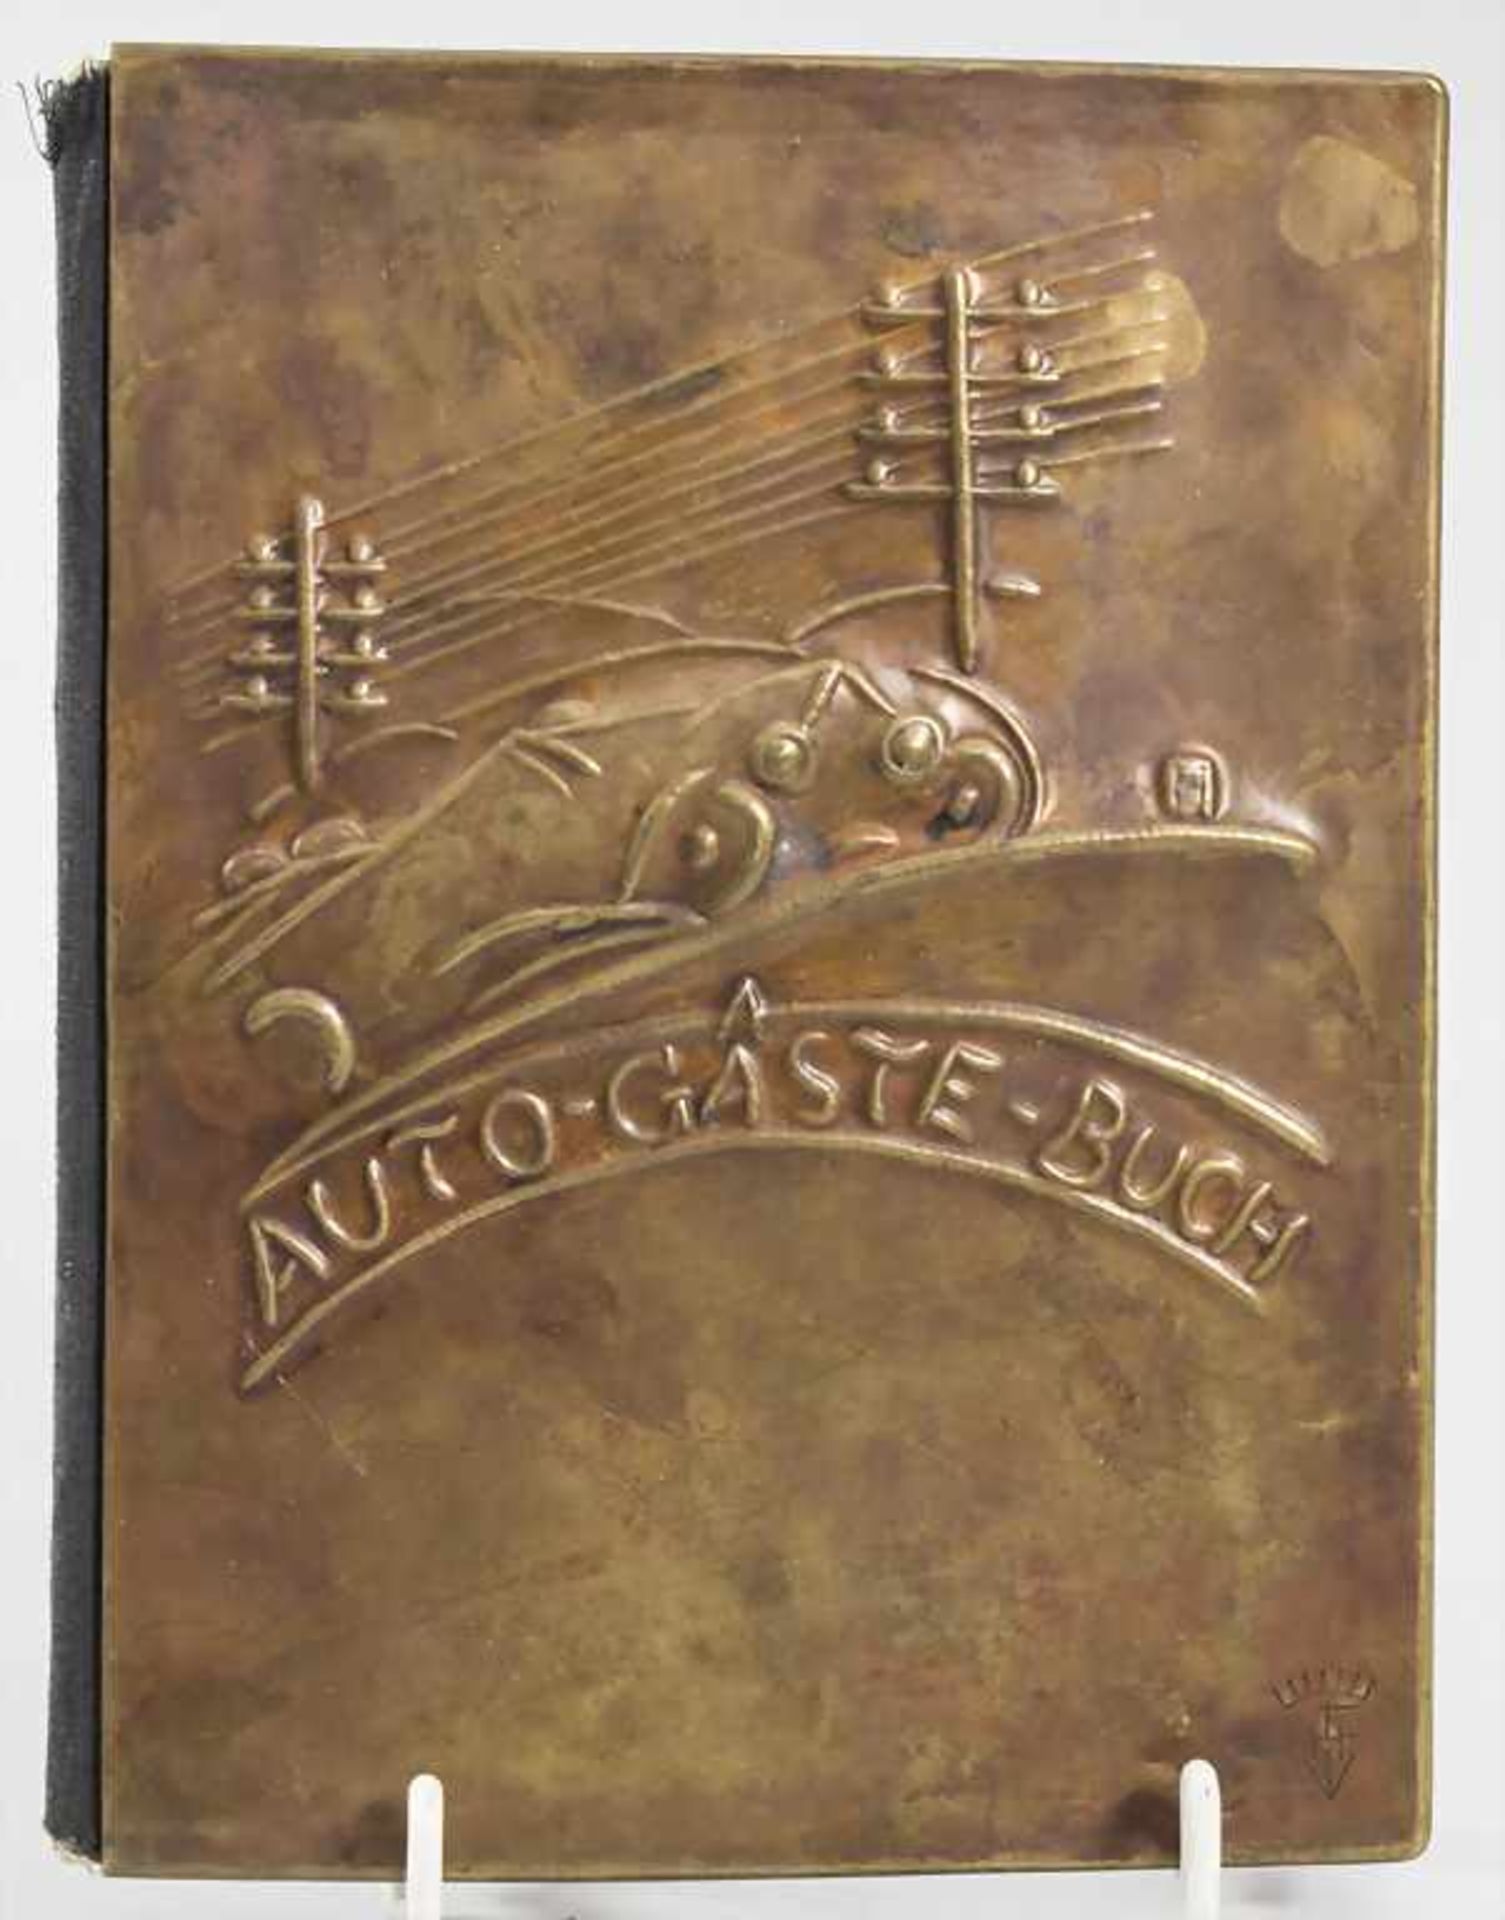 Art Déco Gästebuch mit Rennwagen Motiv / An Art Deco guest book with racing car decor